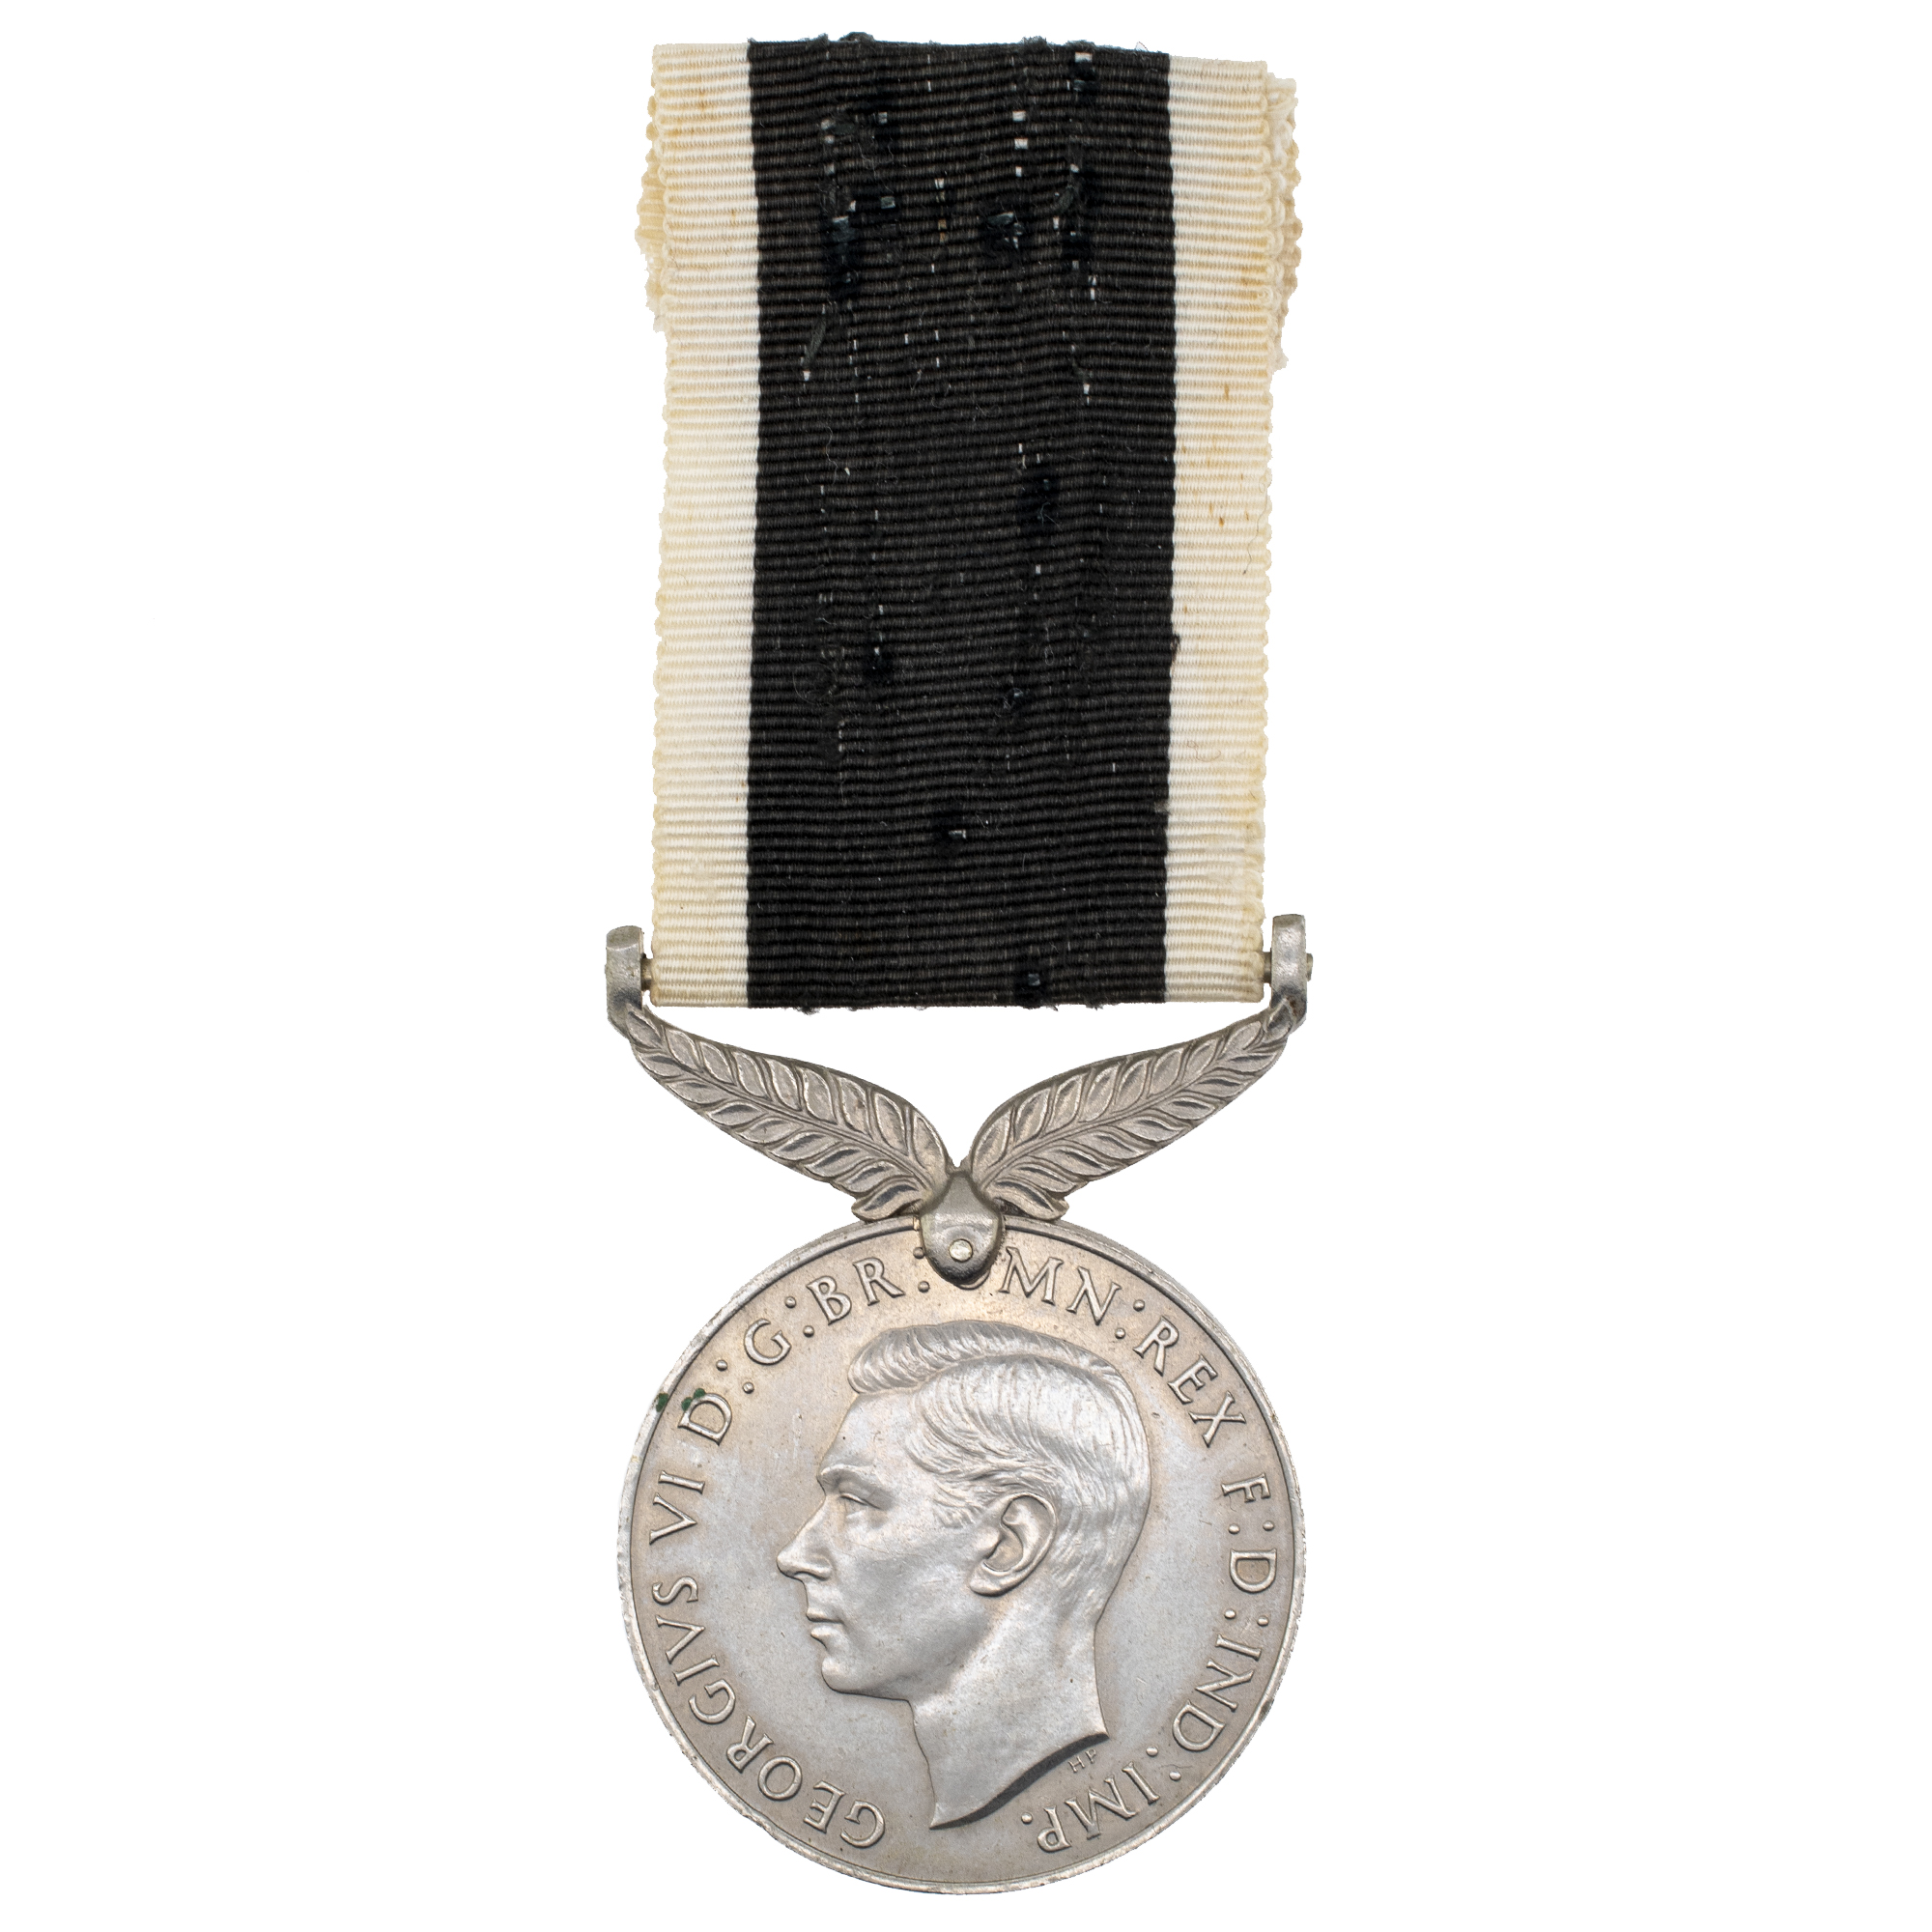 Великобритания. Медаль "За боевые заслуги Новой Зеландии" 1939 - 1945 гг.